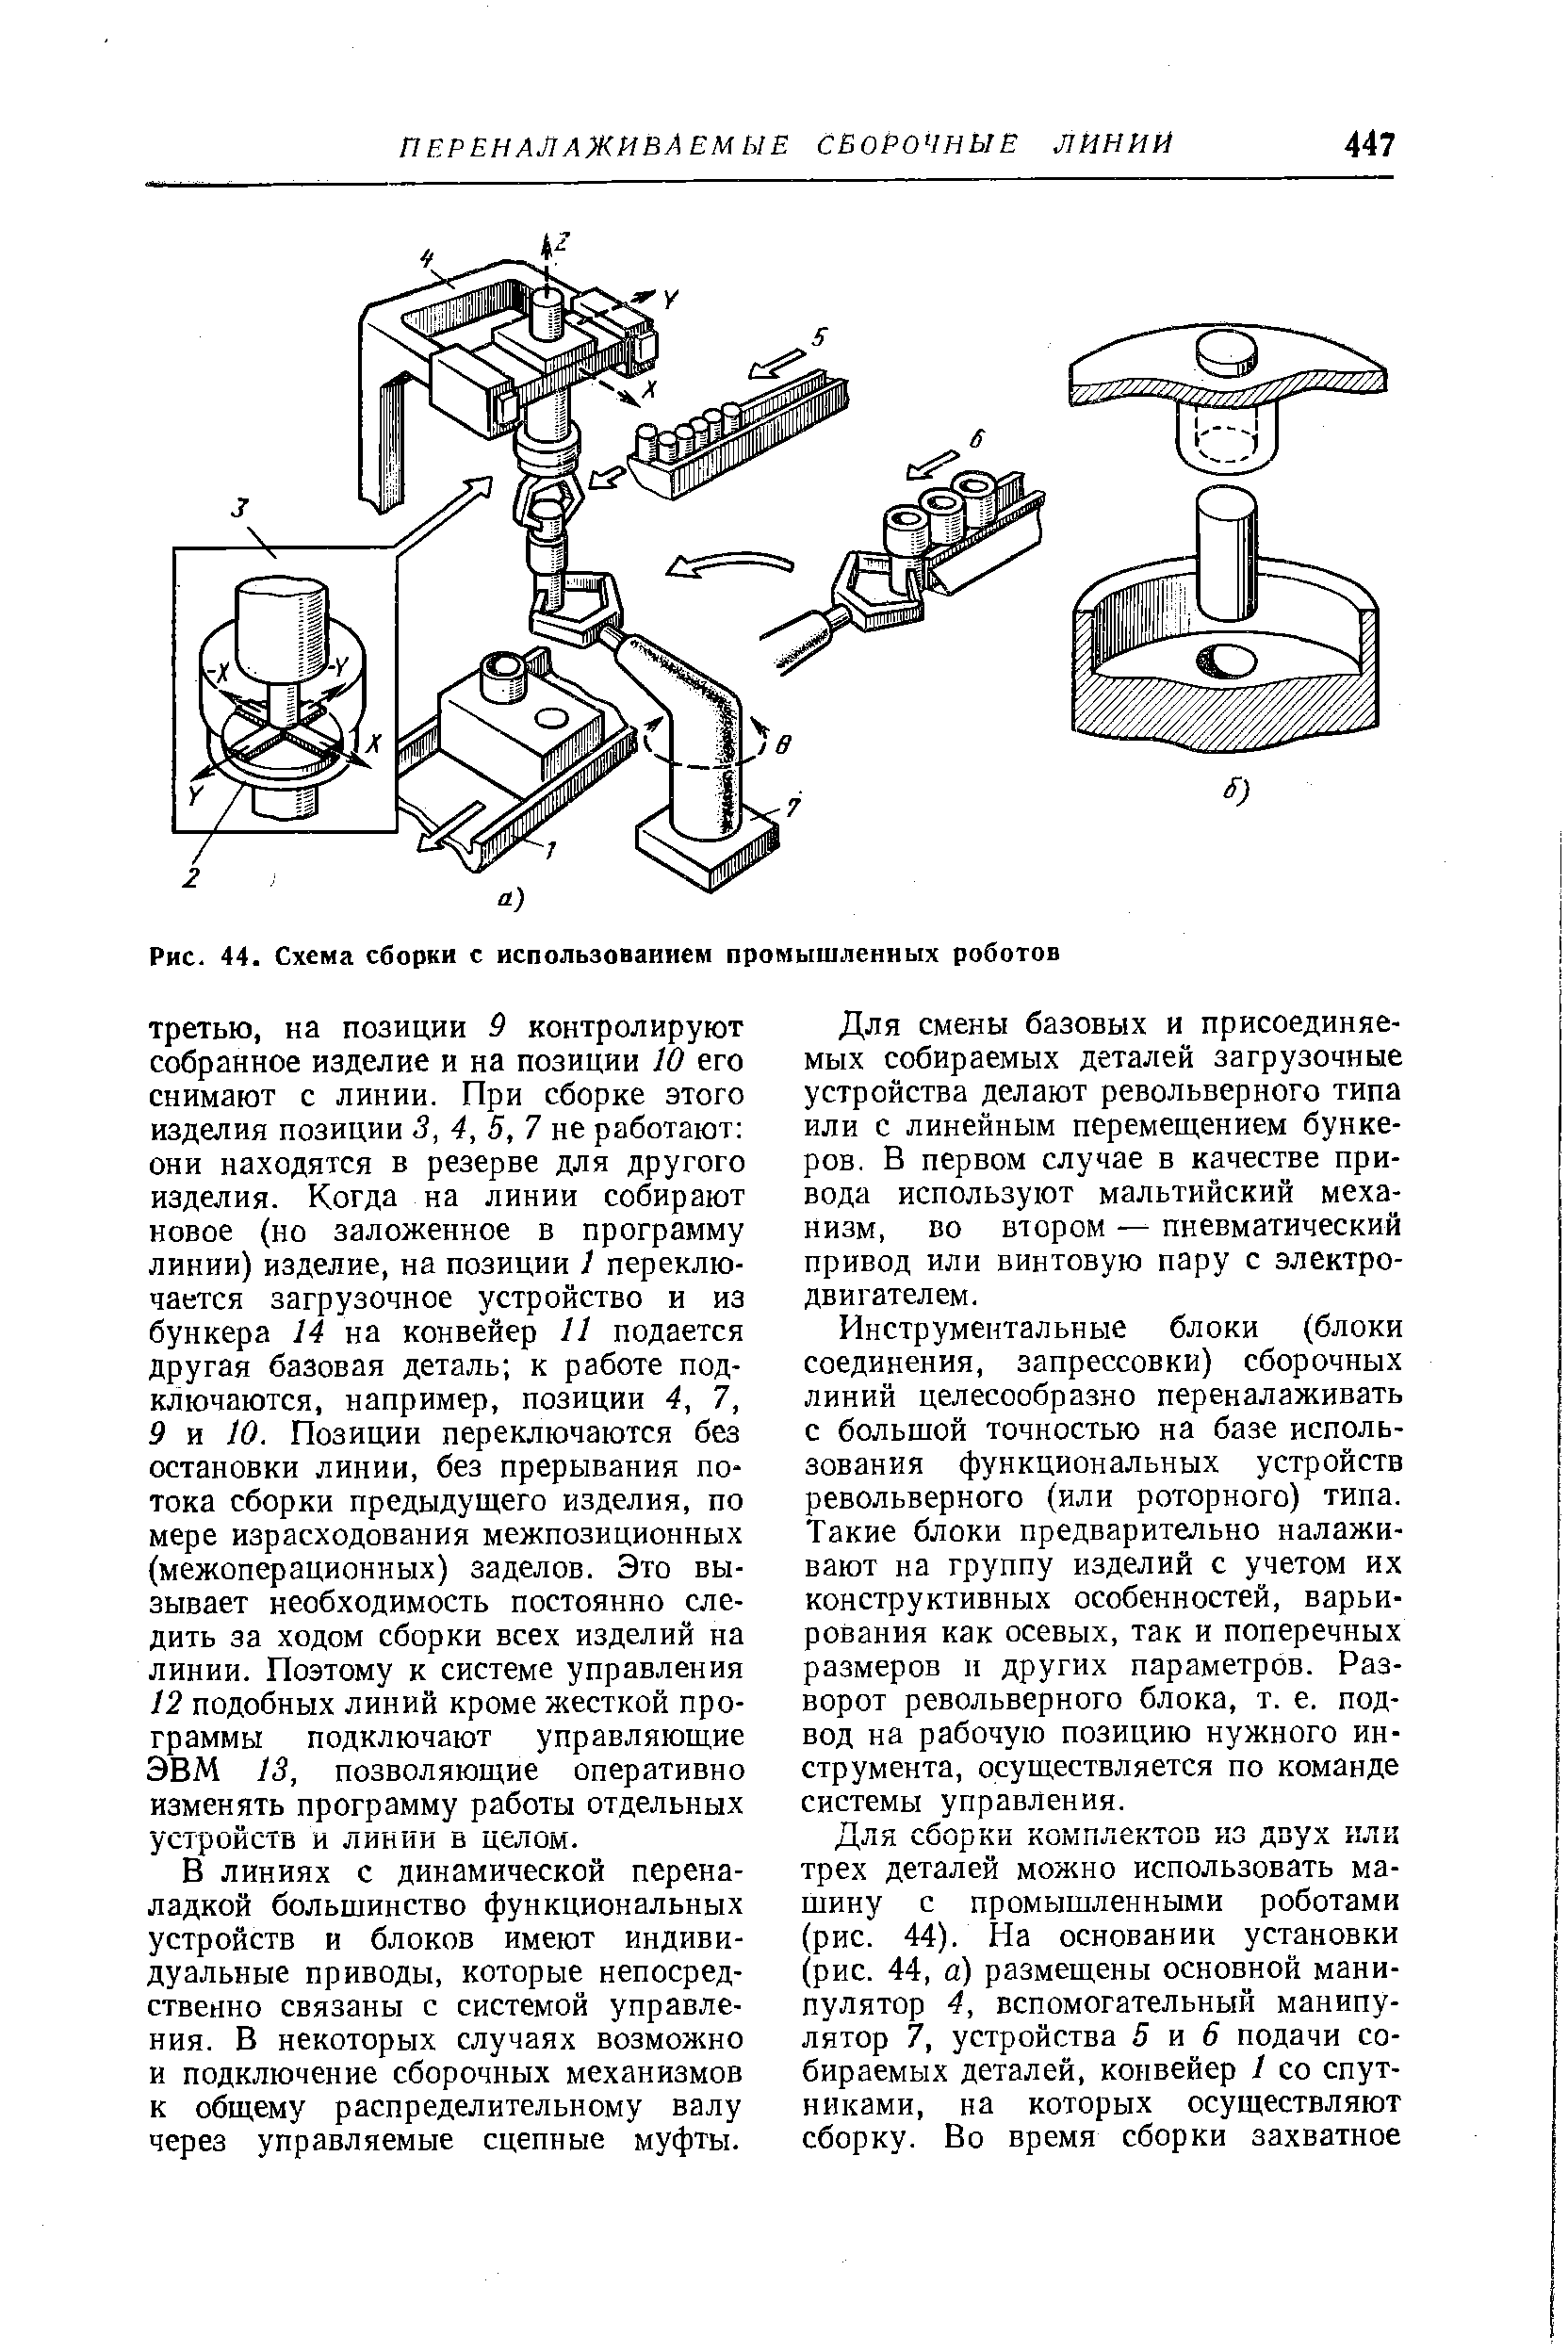 Рис. 44. Схема сборки с использованием промышленных роботов
